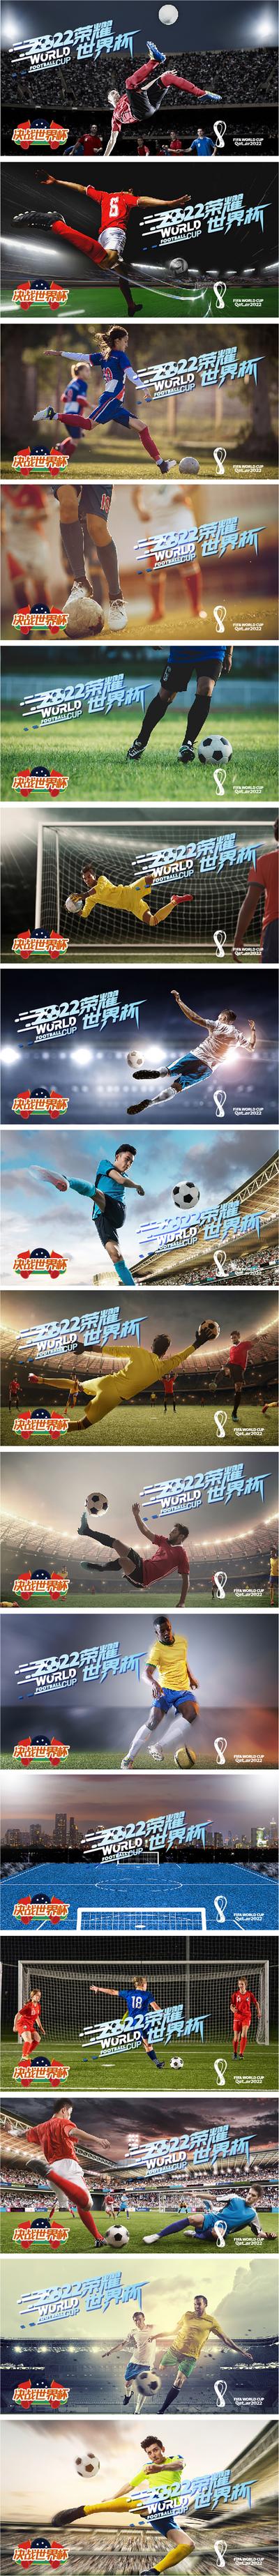 南门网 海报 广告展板 2022 卡塔尔 世界杯 足球赛 竞技 足球杯